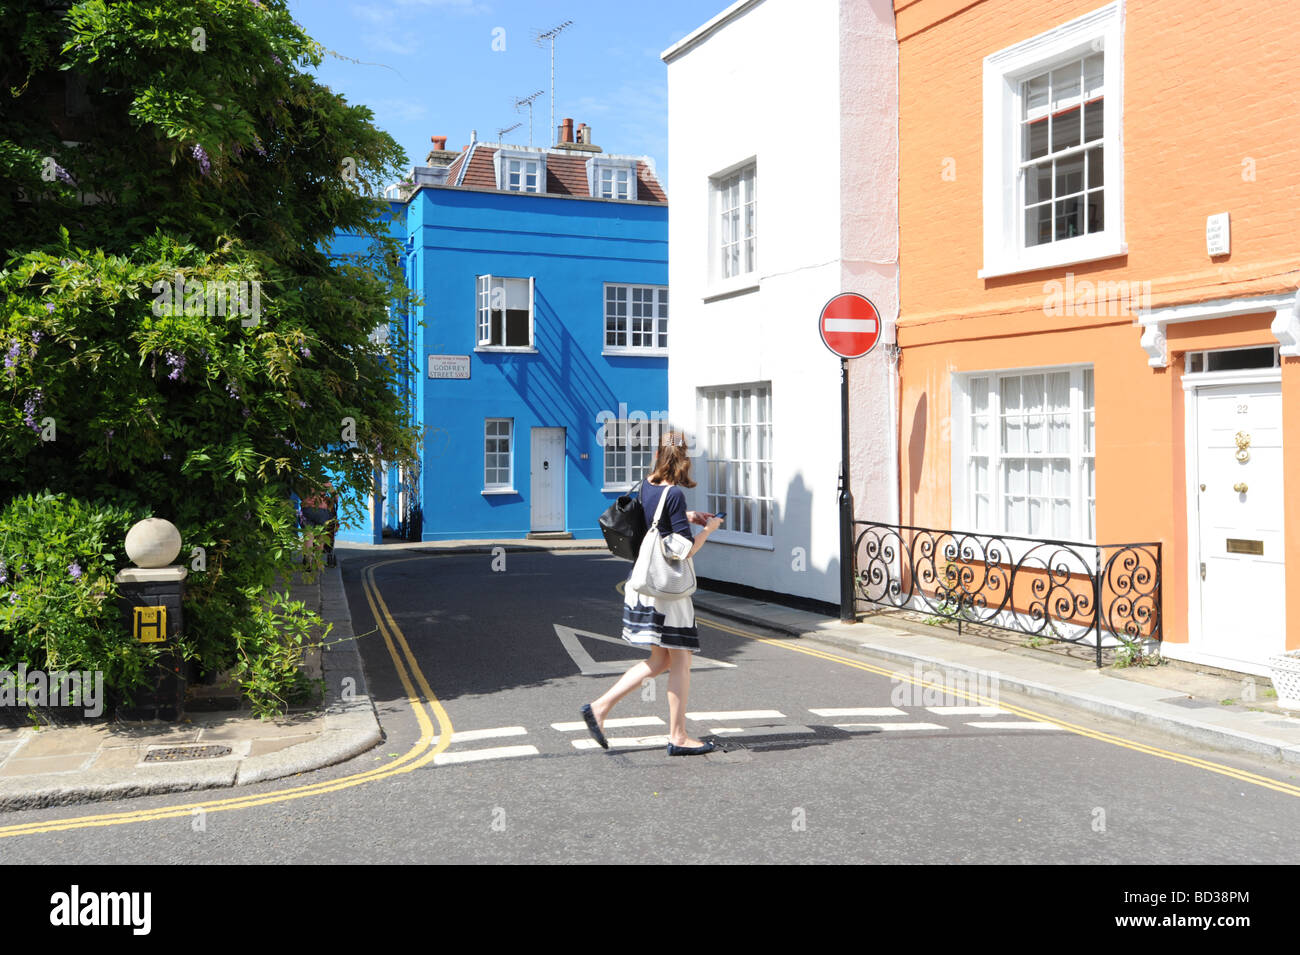 Maisons colorées à la jonction de Godfrey street et Burnham Street juste à côté de la Kings Road, Chelsea, Londres. Banque D'Images